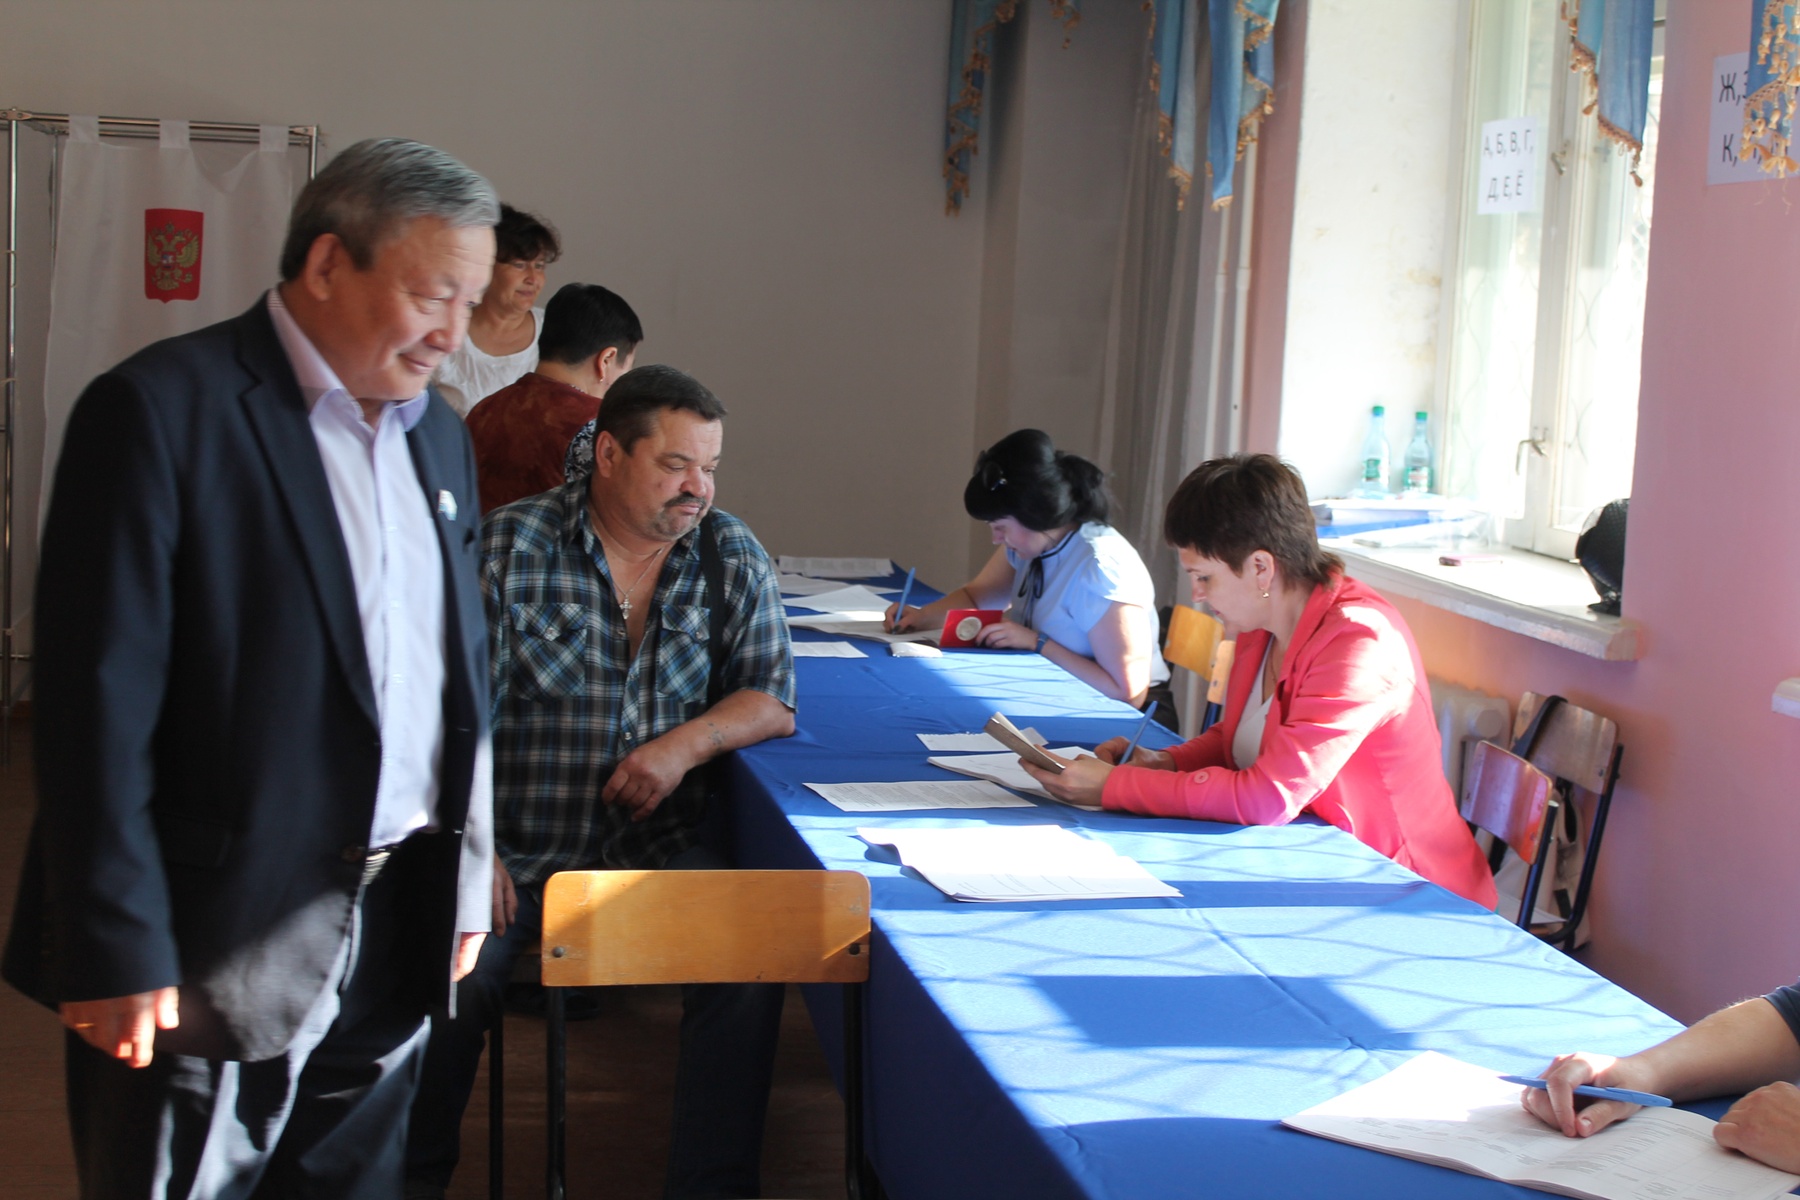   Единый день предварительного голосования. Республика Алтай